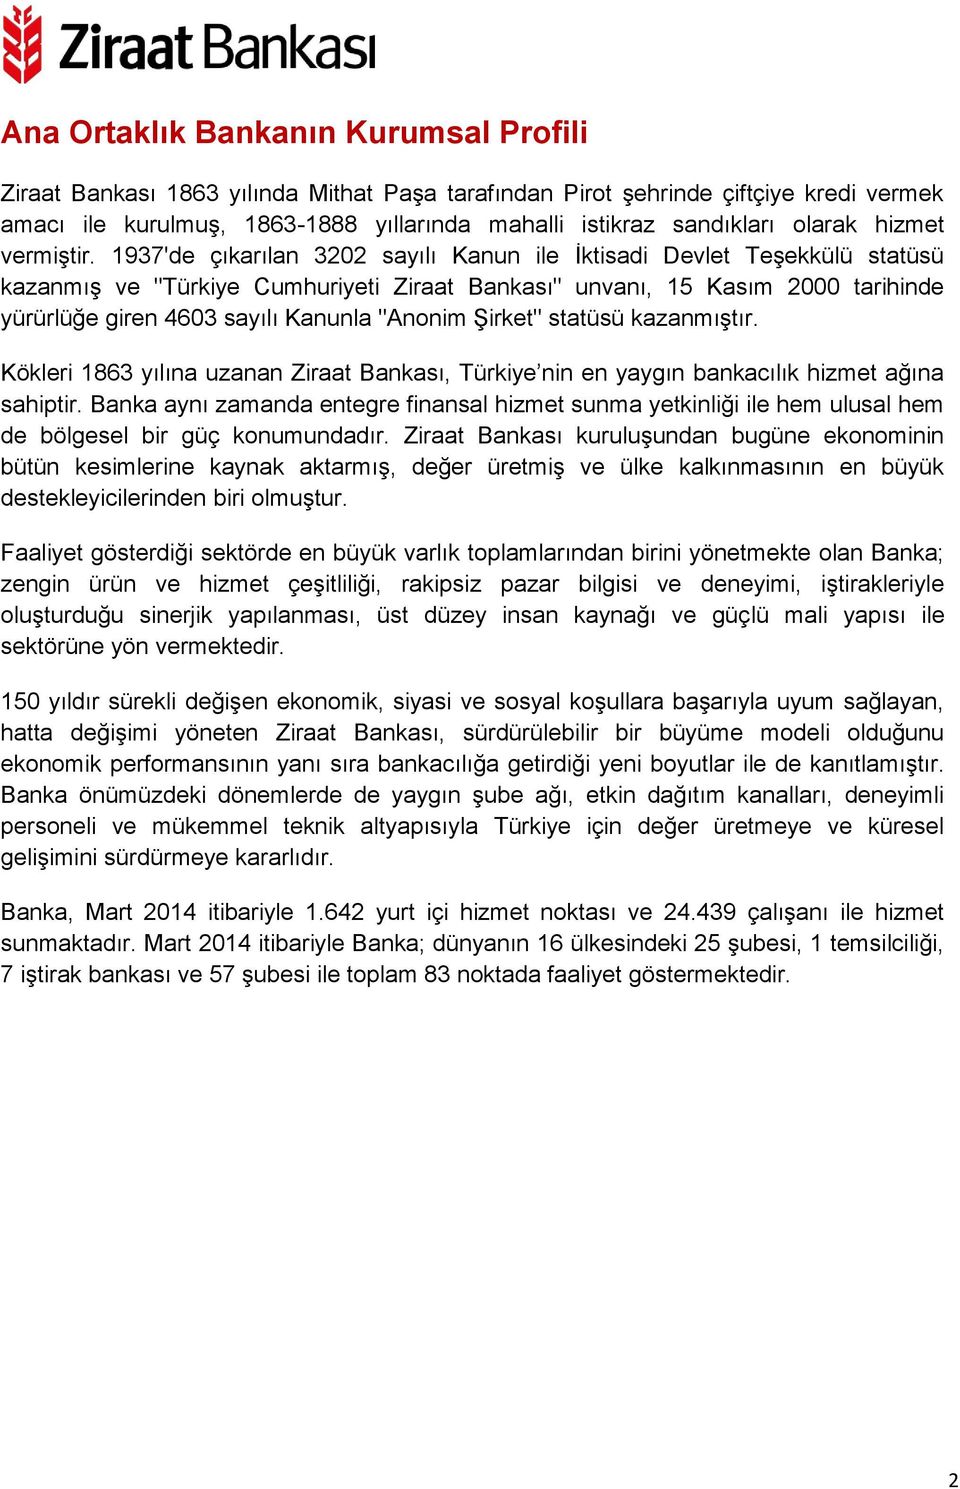 1937'de çıkarılan 3202 sayılı Kanun ile İktisadi Devlet Teşekkülü statüsü kazanmış ve "Türkiye Cumhuriyeti Ziraat Bankası" unvanı, 15 Kasım 2000 tarihinde yürürlüğe giren 4603 sayılı Kanunla "Anonim